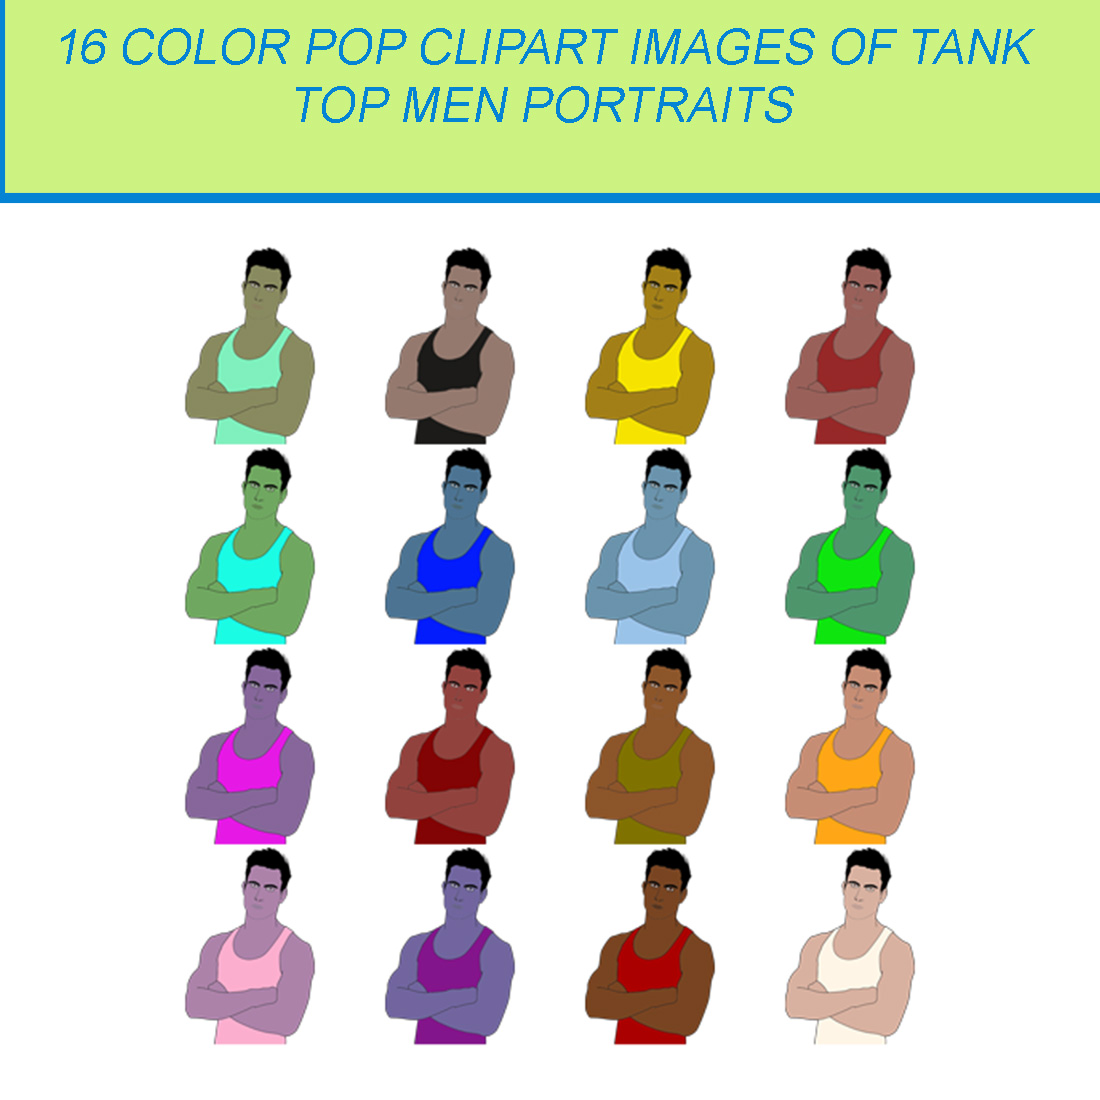 16 COLOR POP CLIPART IMAGES OF TANK TOP MAN PORTRAIT cover image.